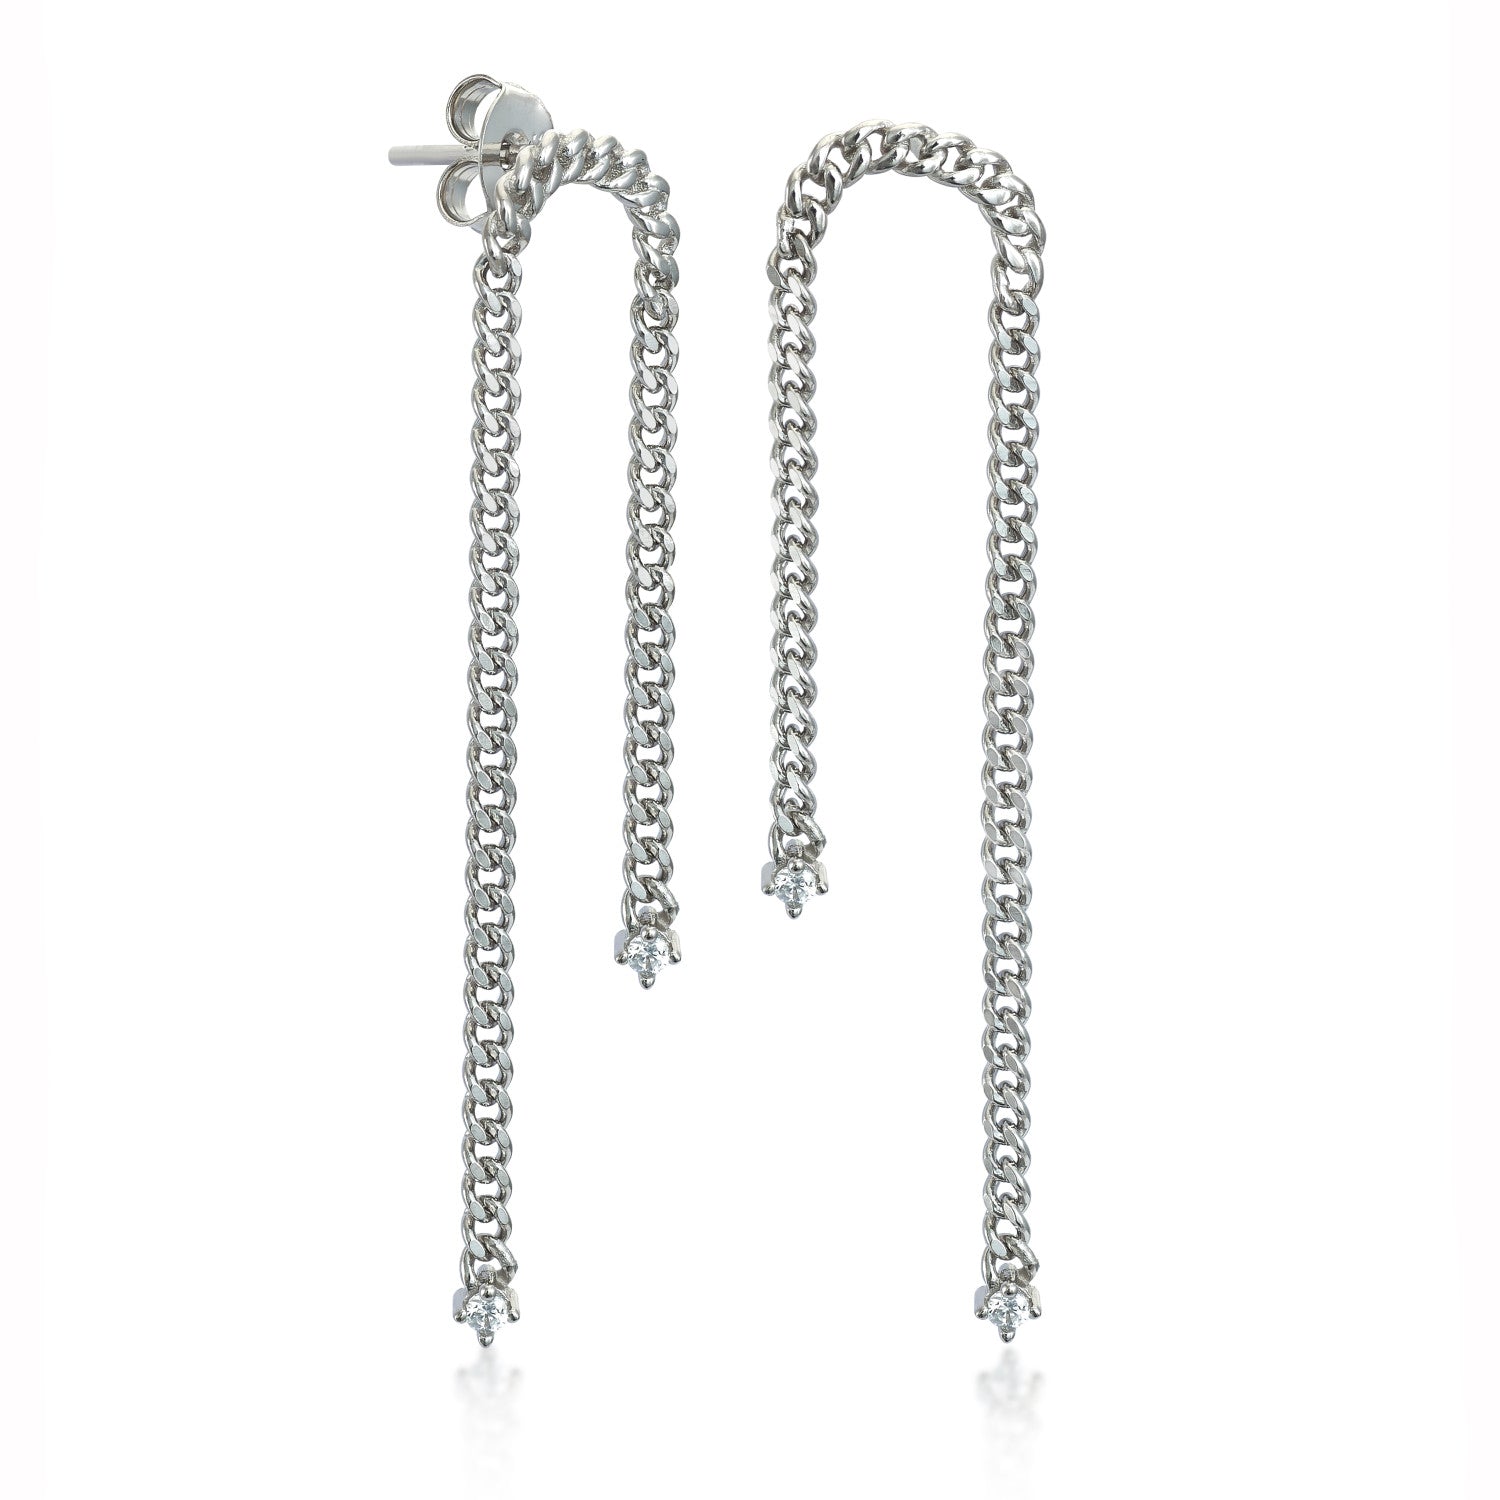 Pendientes largos de plata estilo cadena con detalle circonitas